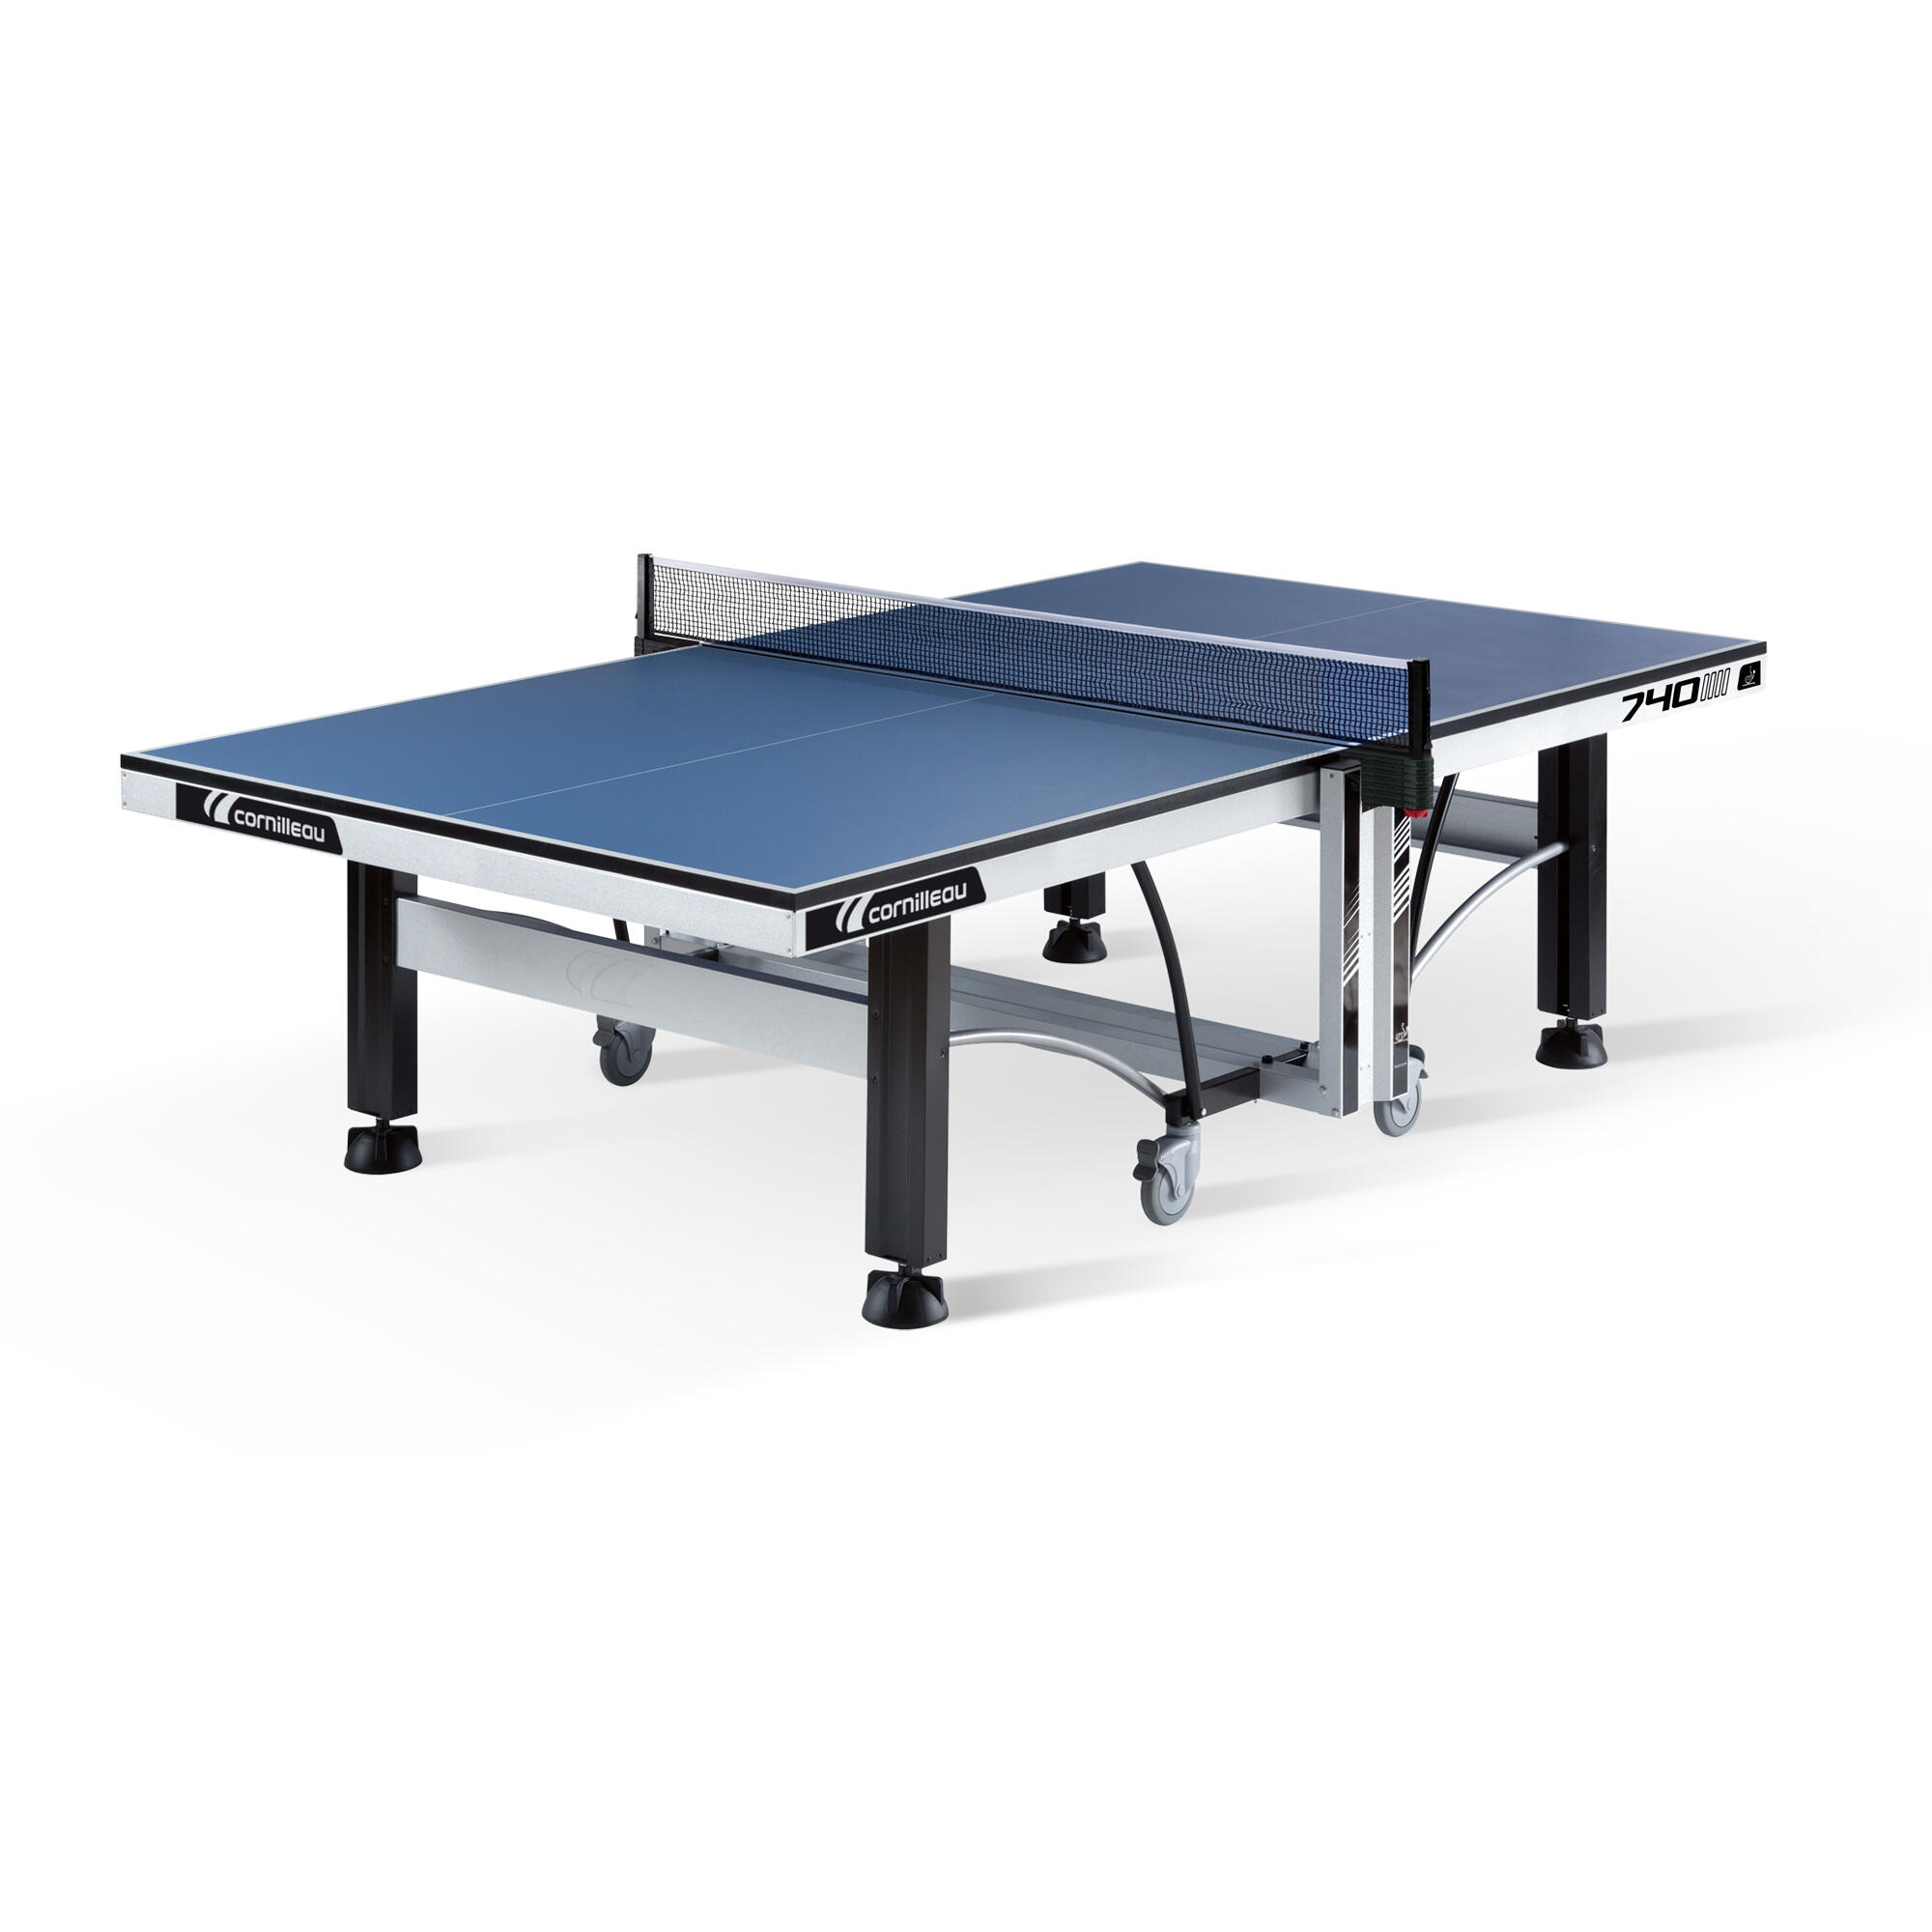 740 ITTF Indoor Club Table Tennis Table 8/8